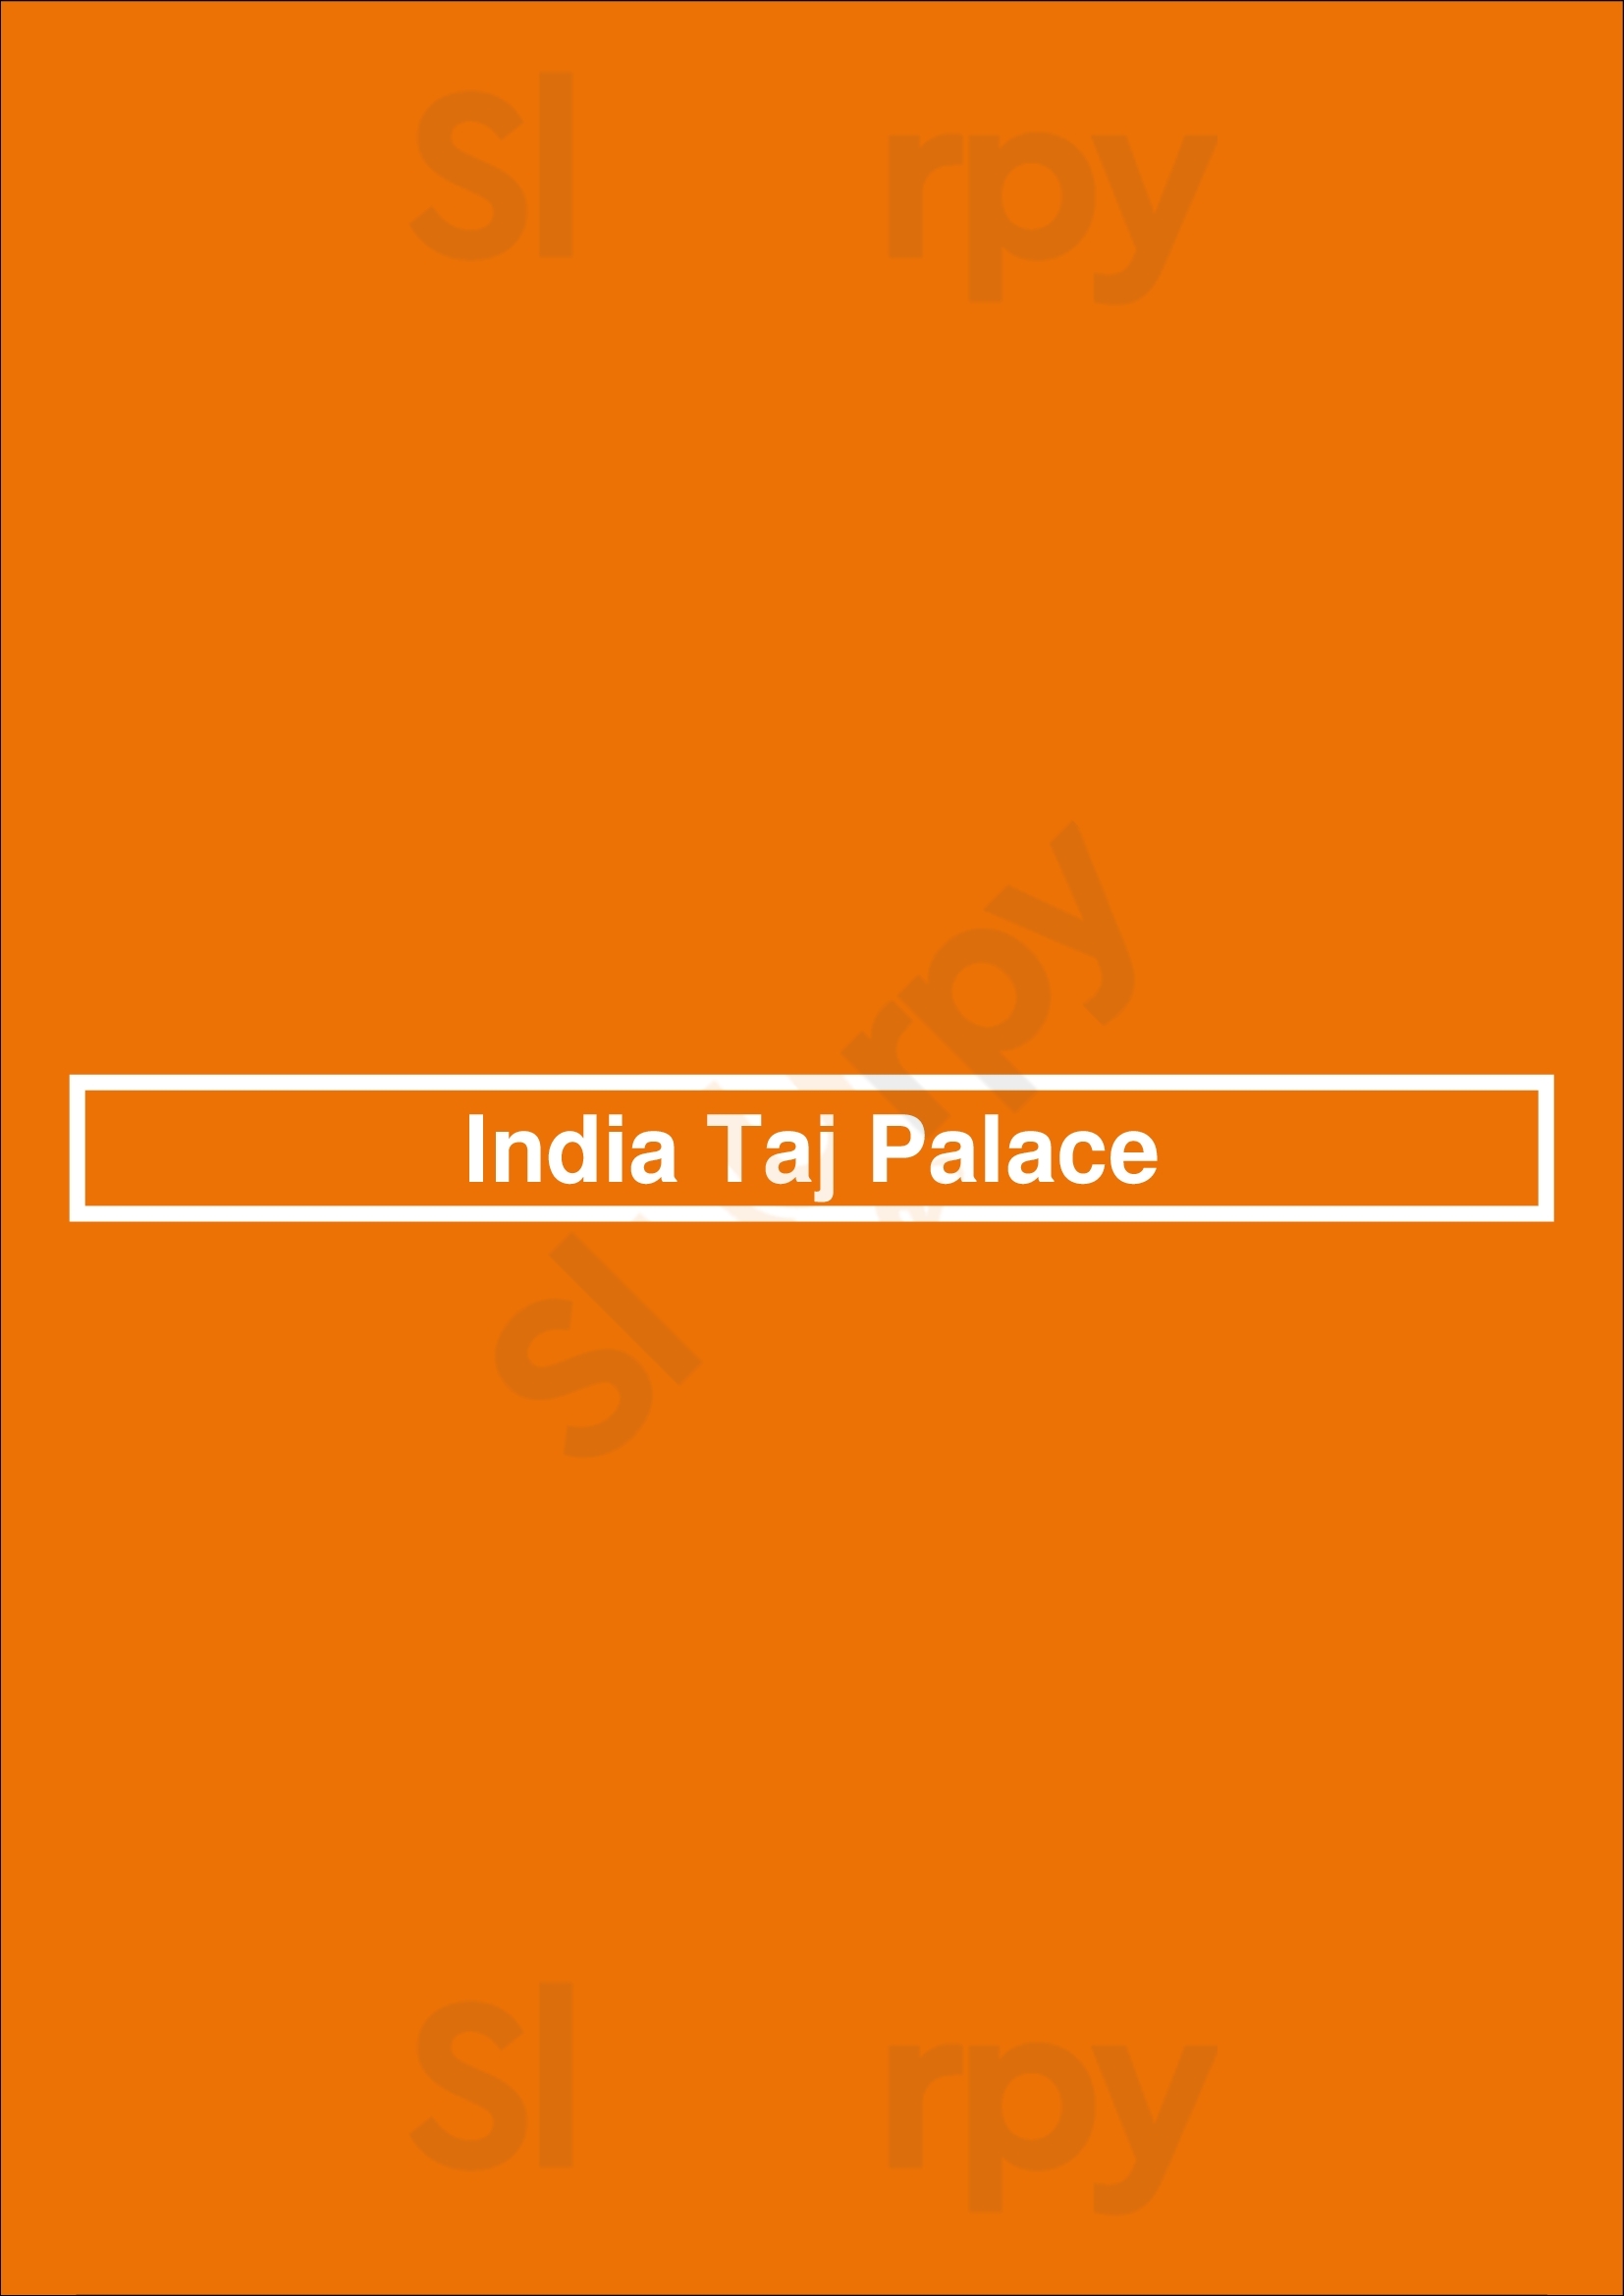 India Taj Palace San Antonio Menu - 1